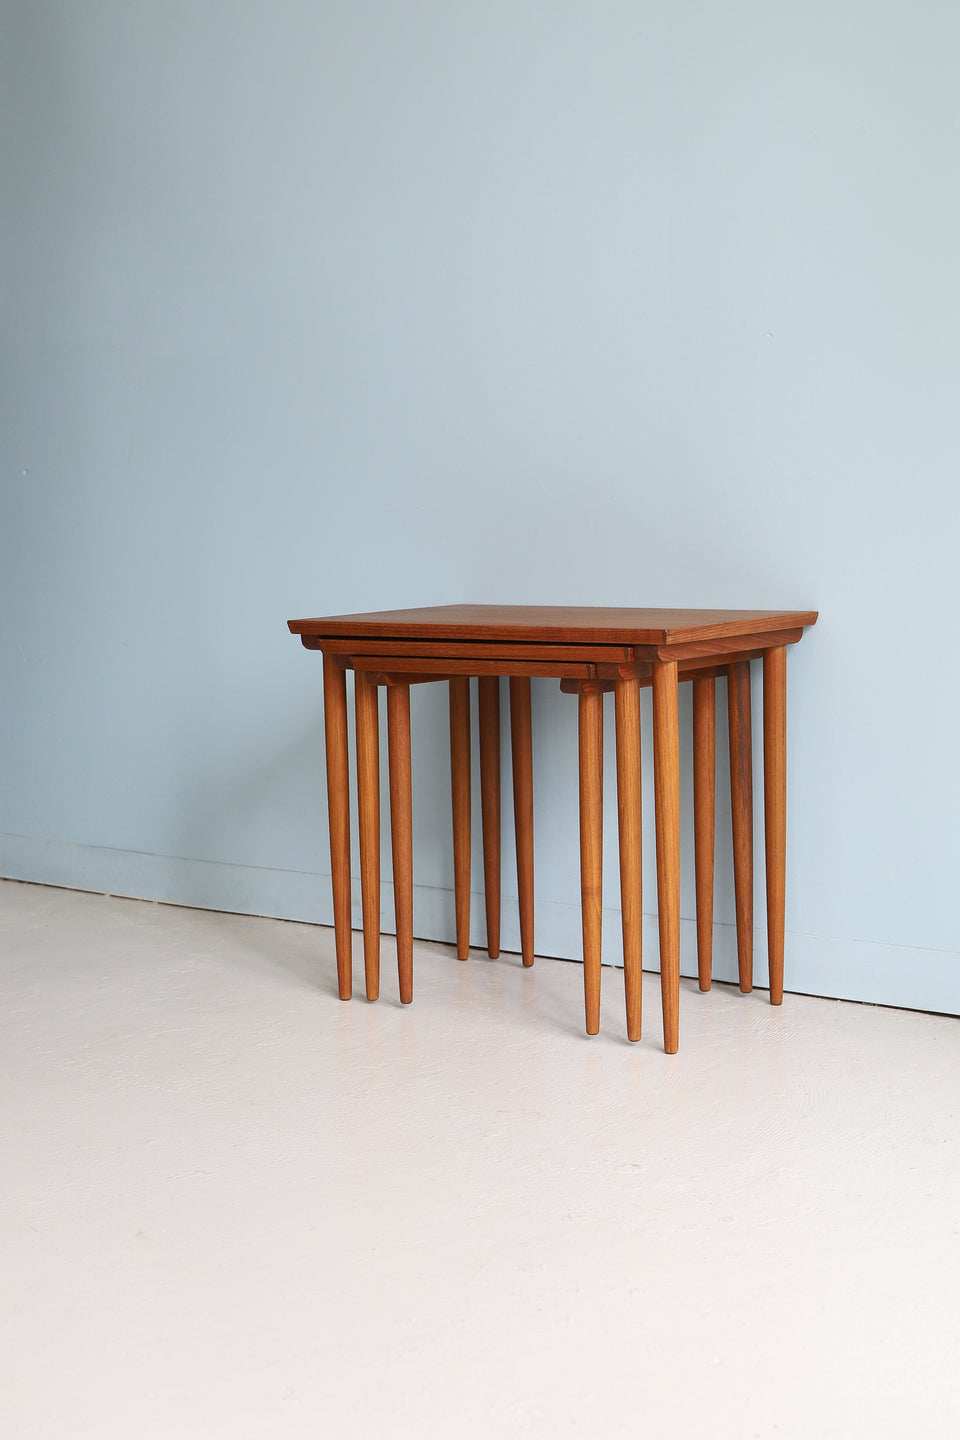 Teakwood Nesting Table Danish Vintage/デンマークヴィンテージ ネストテーブル サイドテーブル チーク材 北欧家具